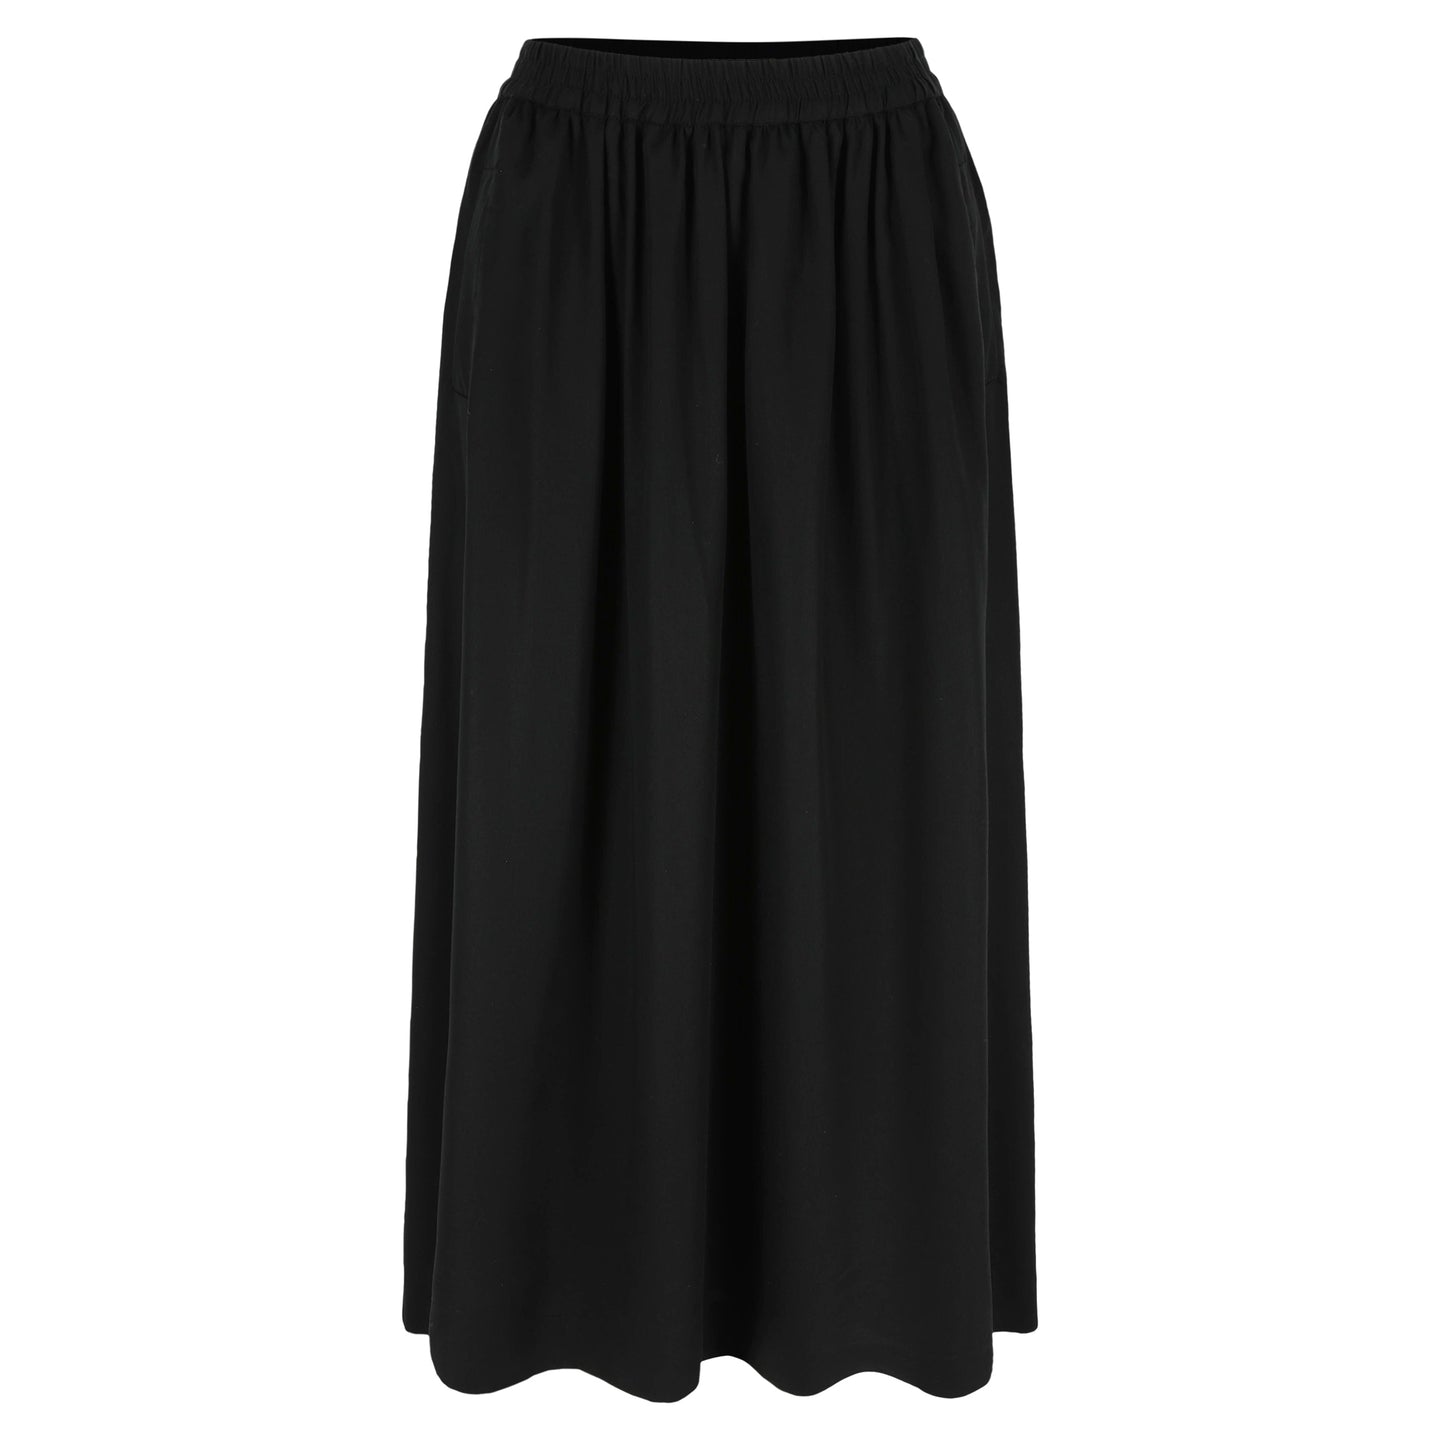 Sage midi skirt Black tencel